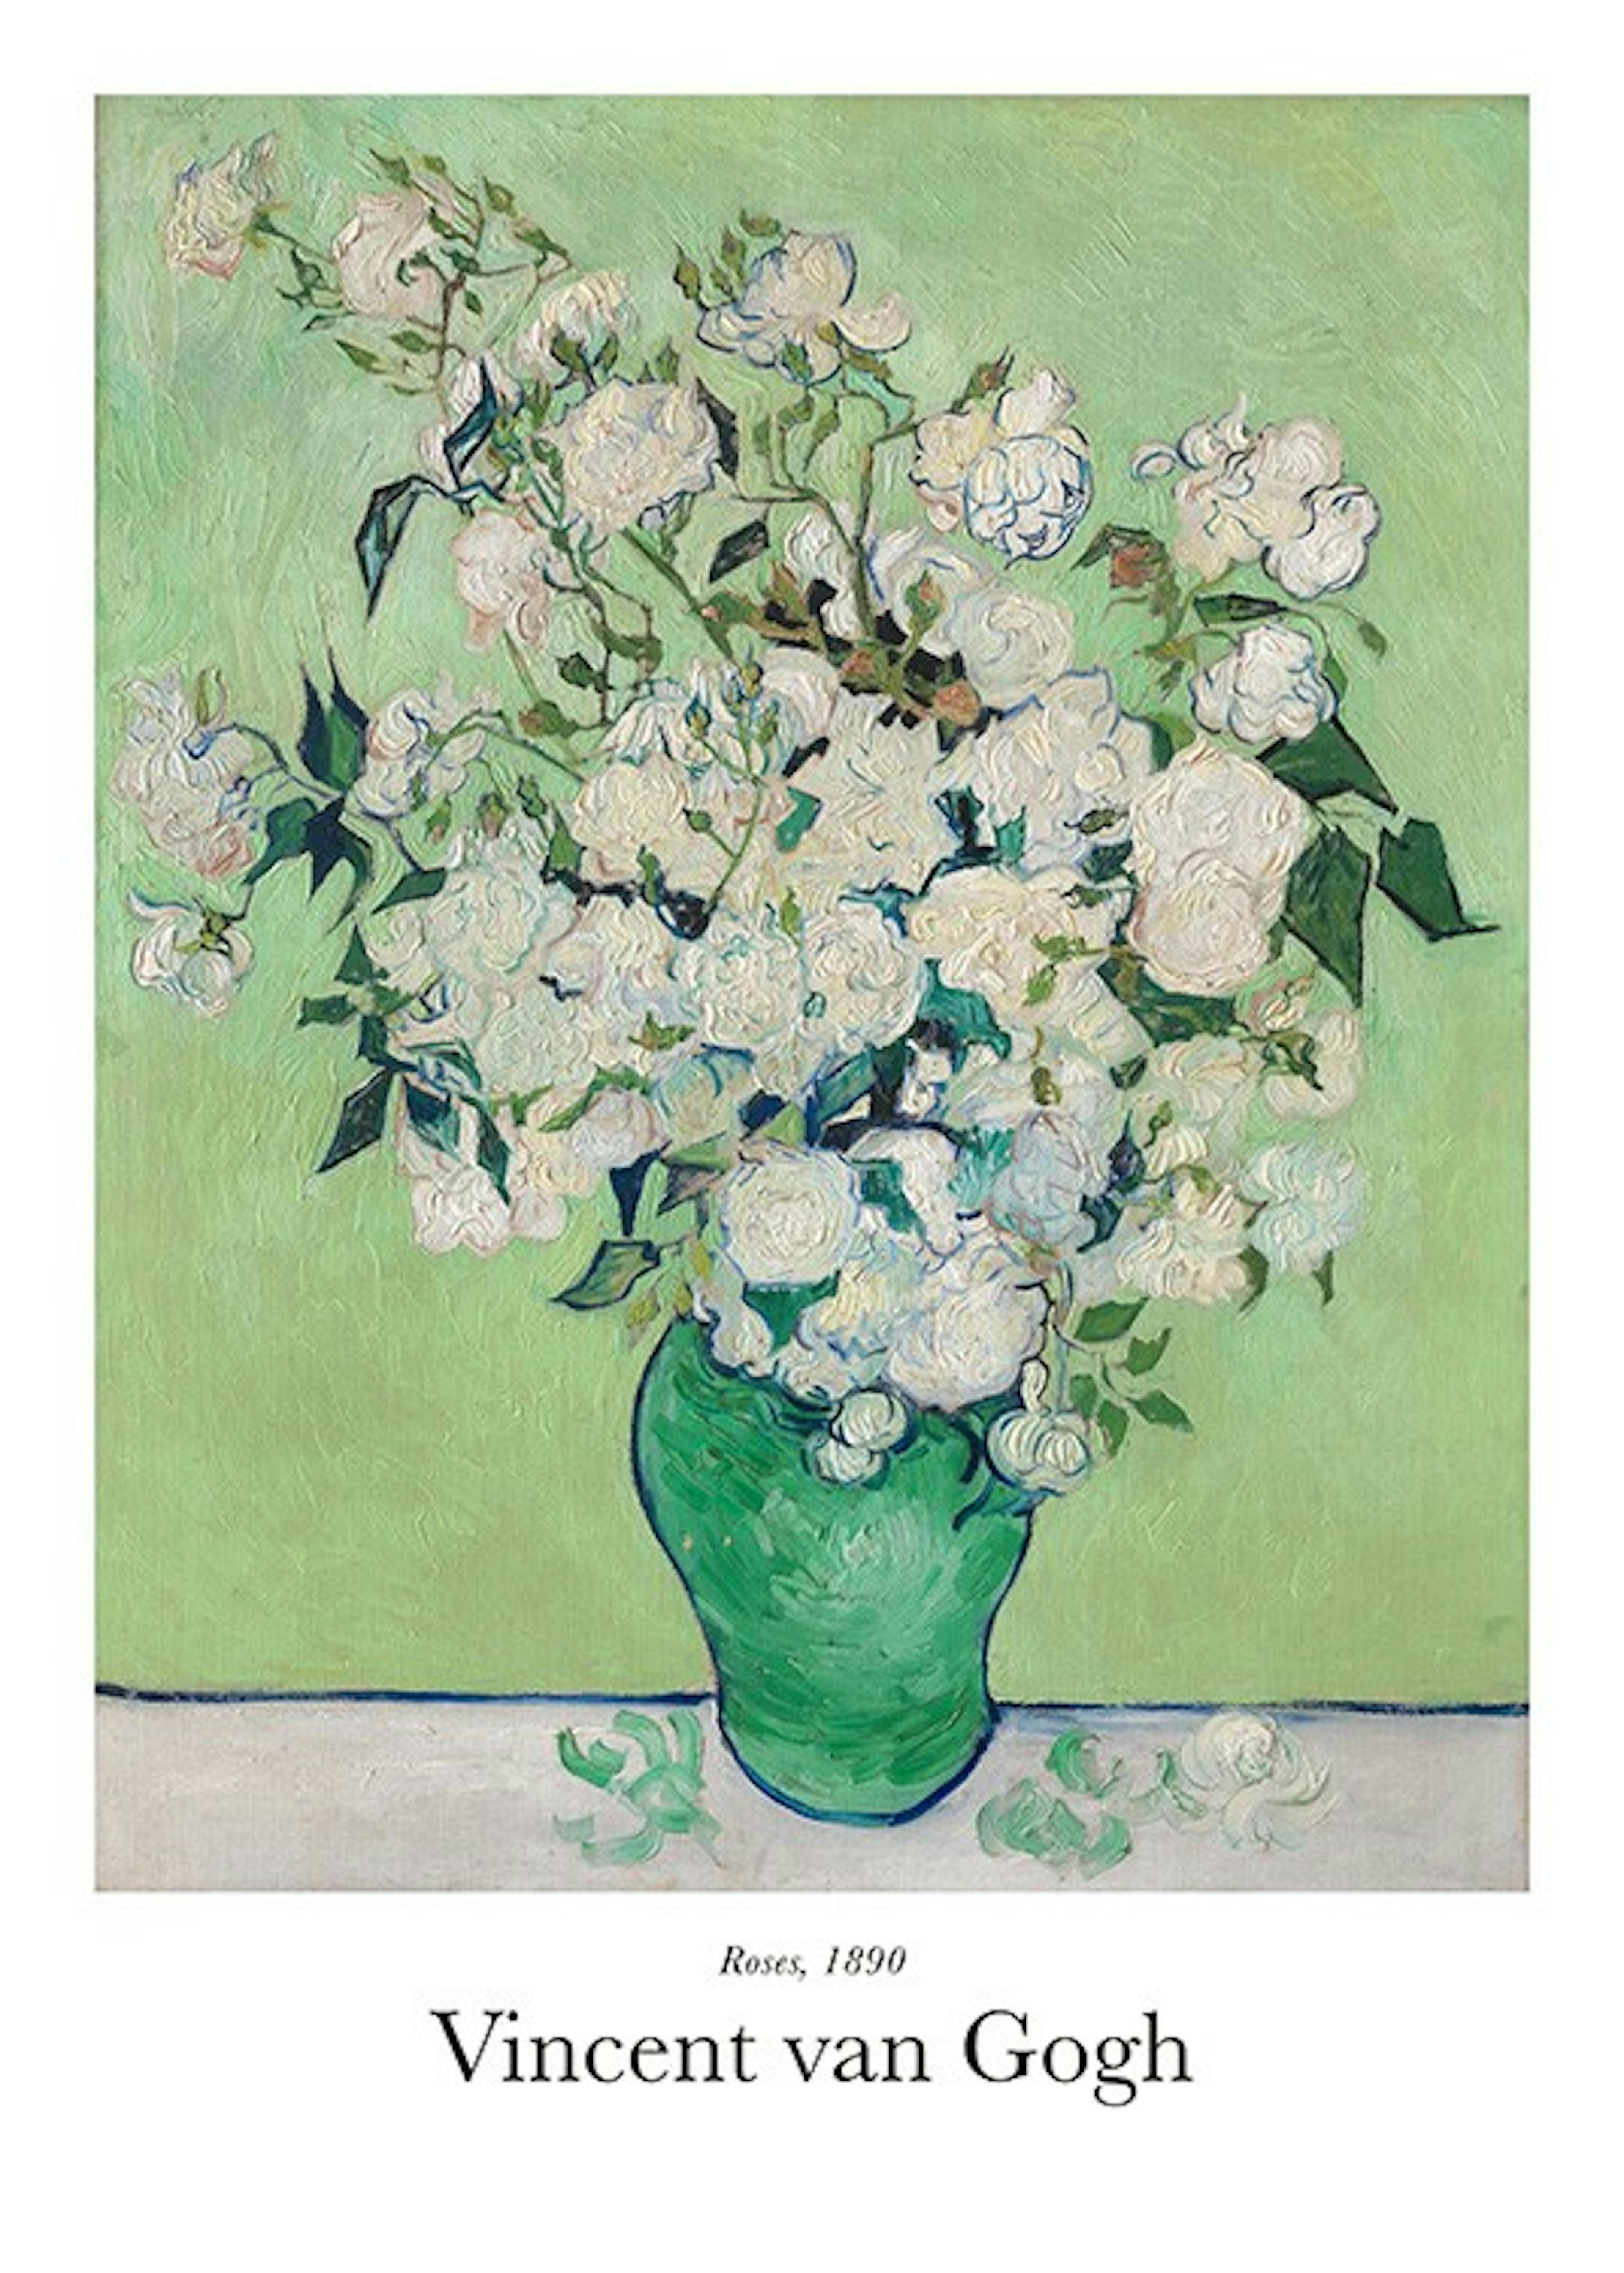 Van Gogh - Roses Poster